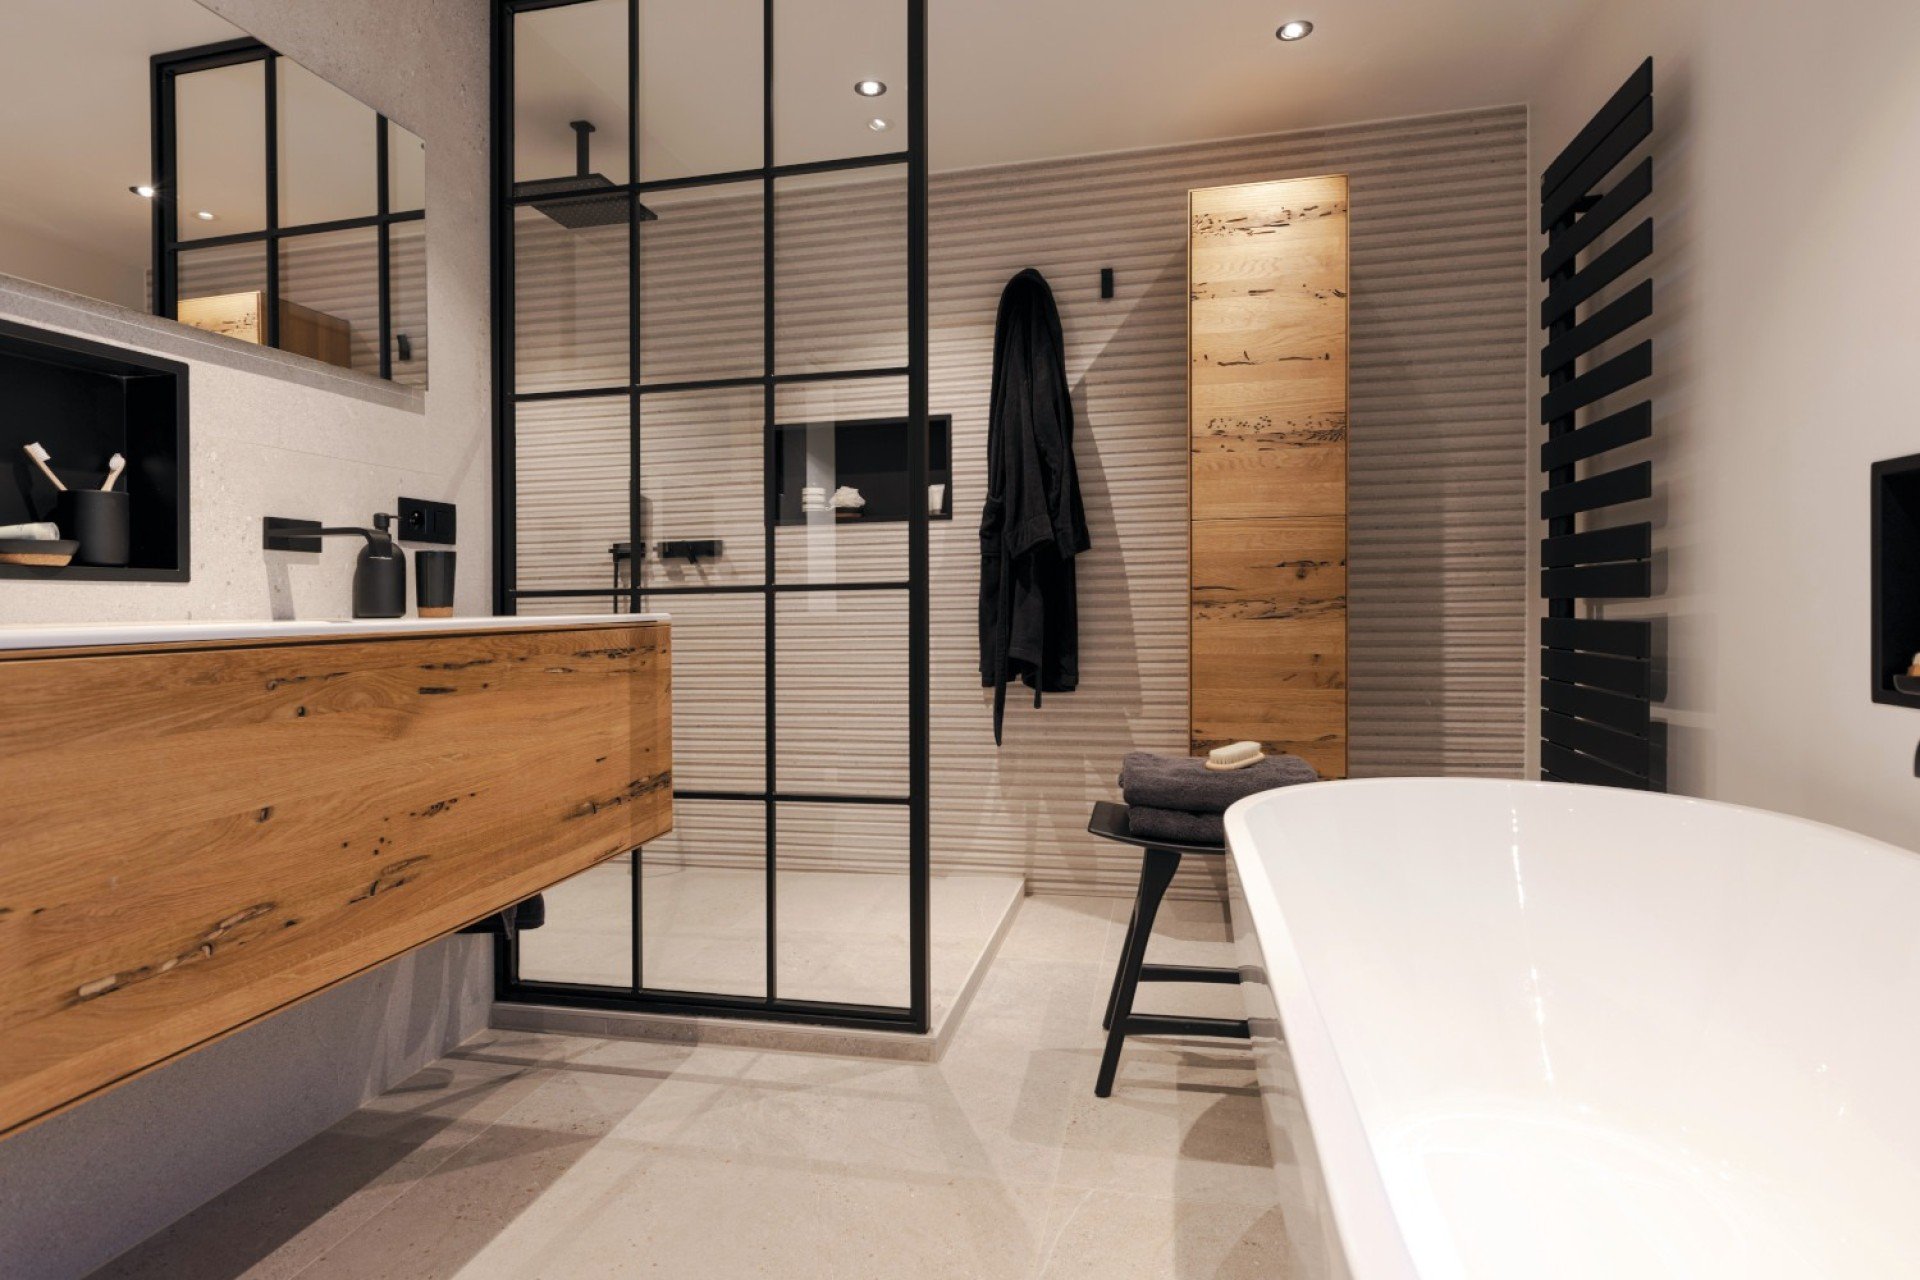 Nebu In de meeste gevallen orgaan Binnenkijker: strakke badkamer met wit, hout en zwart | Steylaerts